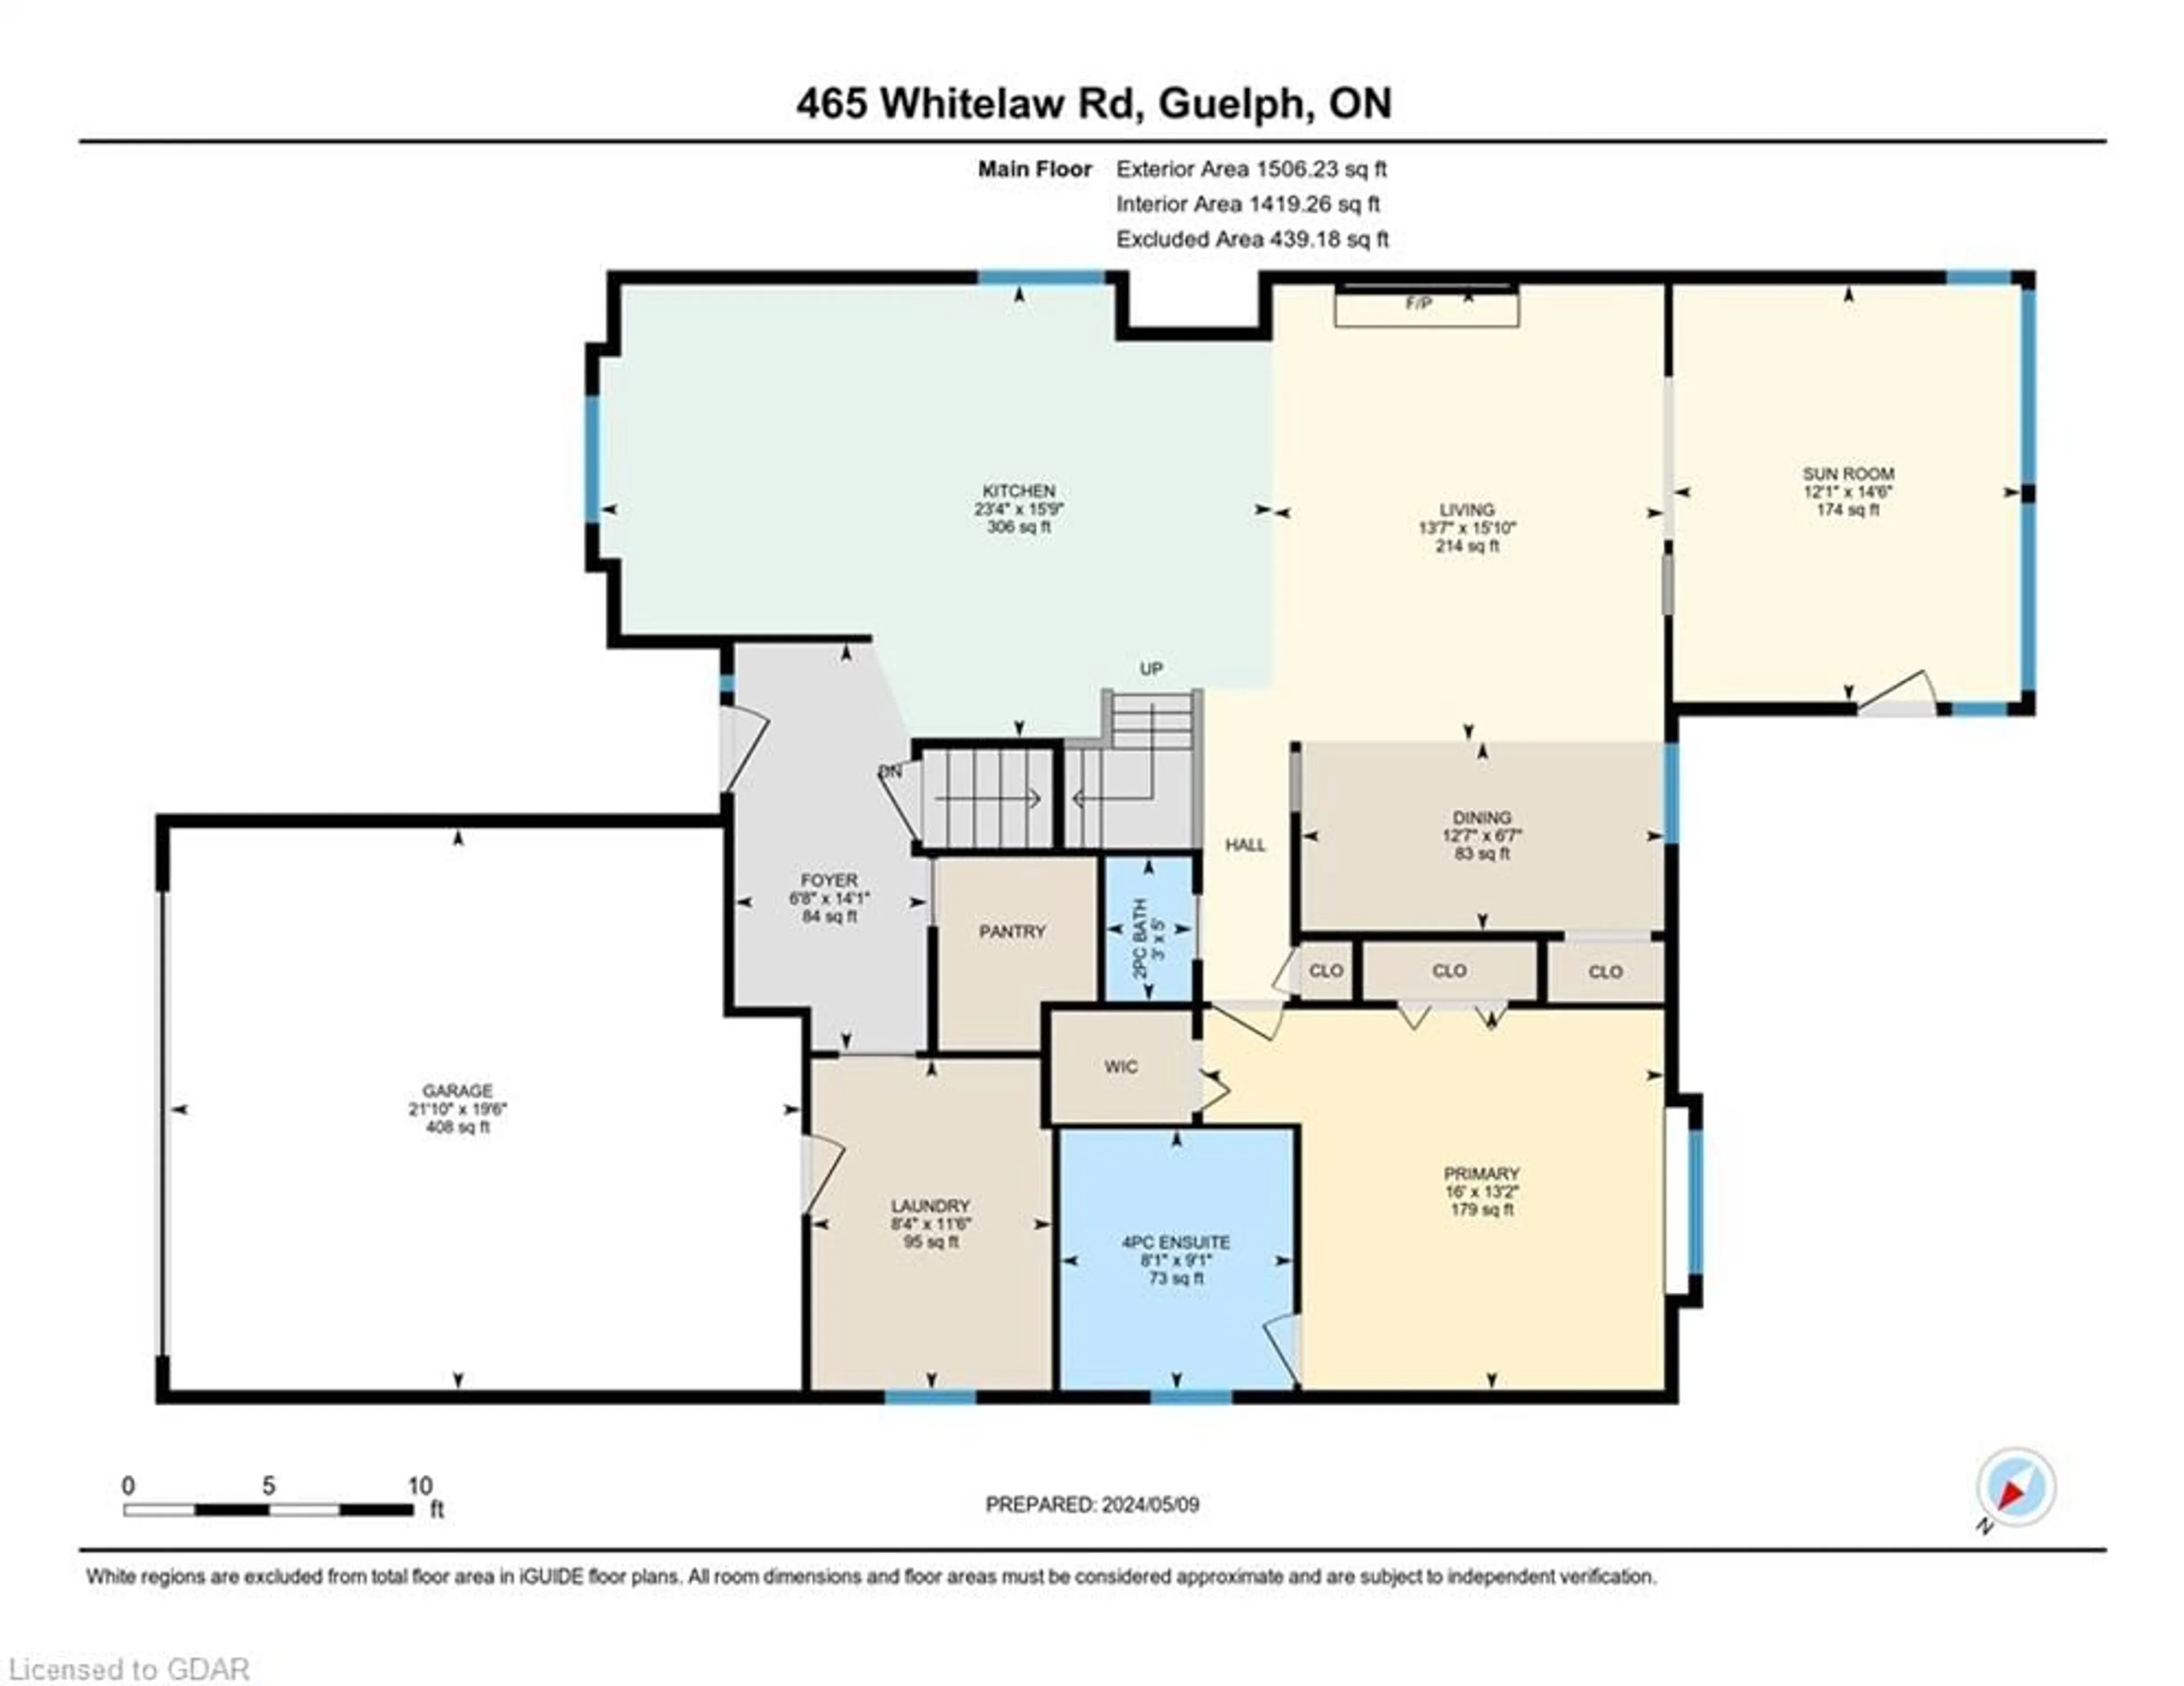 Floor plan for 465 Whitelaw Rd, Guelph Ontario N1K 1L6